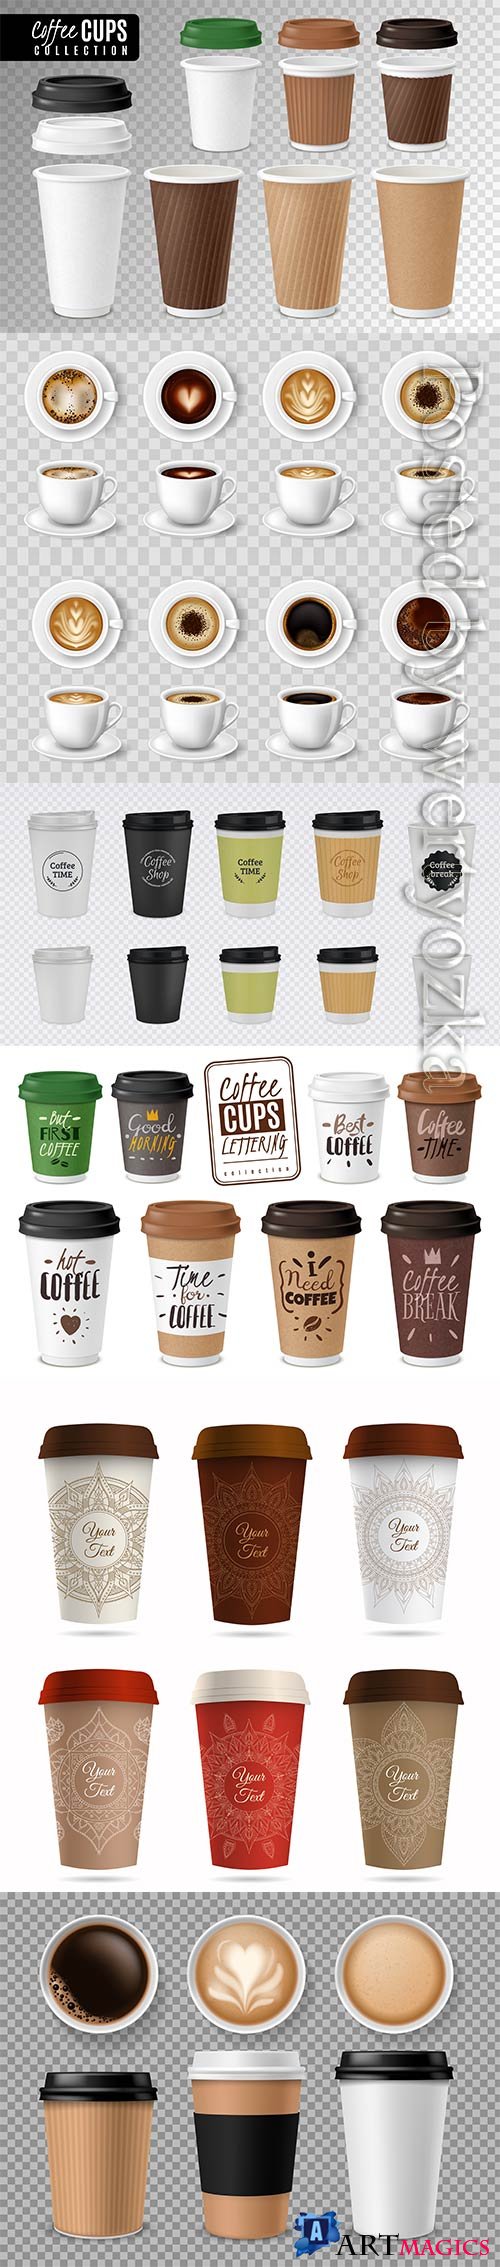 Realistic coffee cups, black coffee, cappuccino, latte, espresso